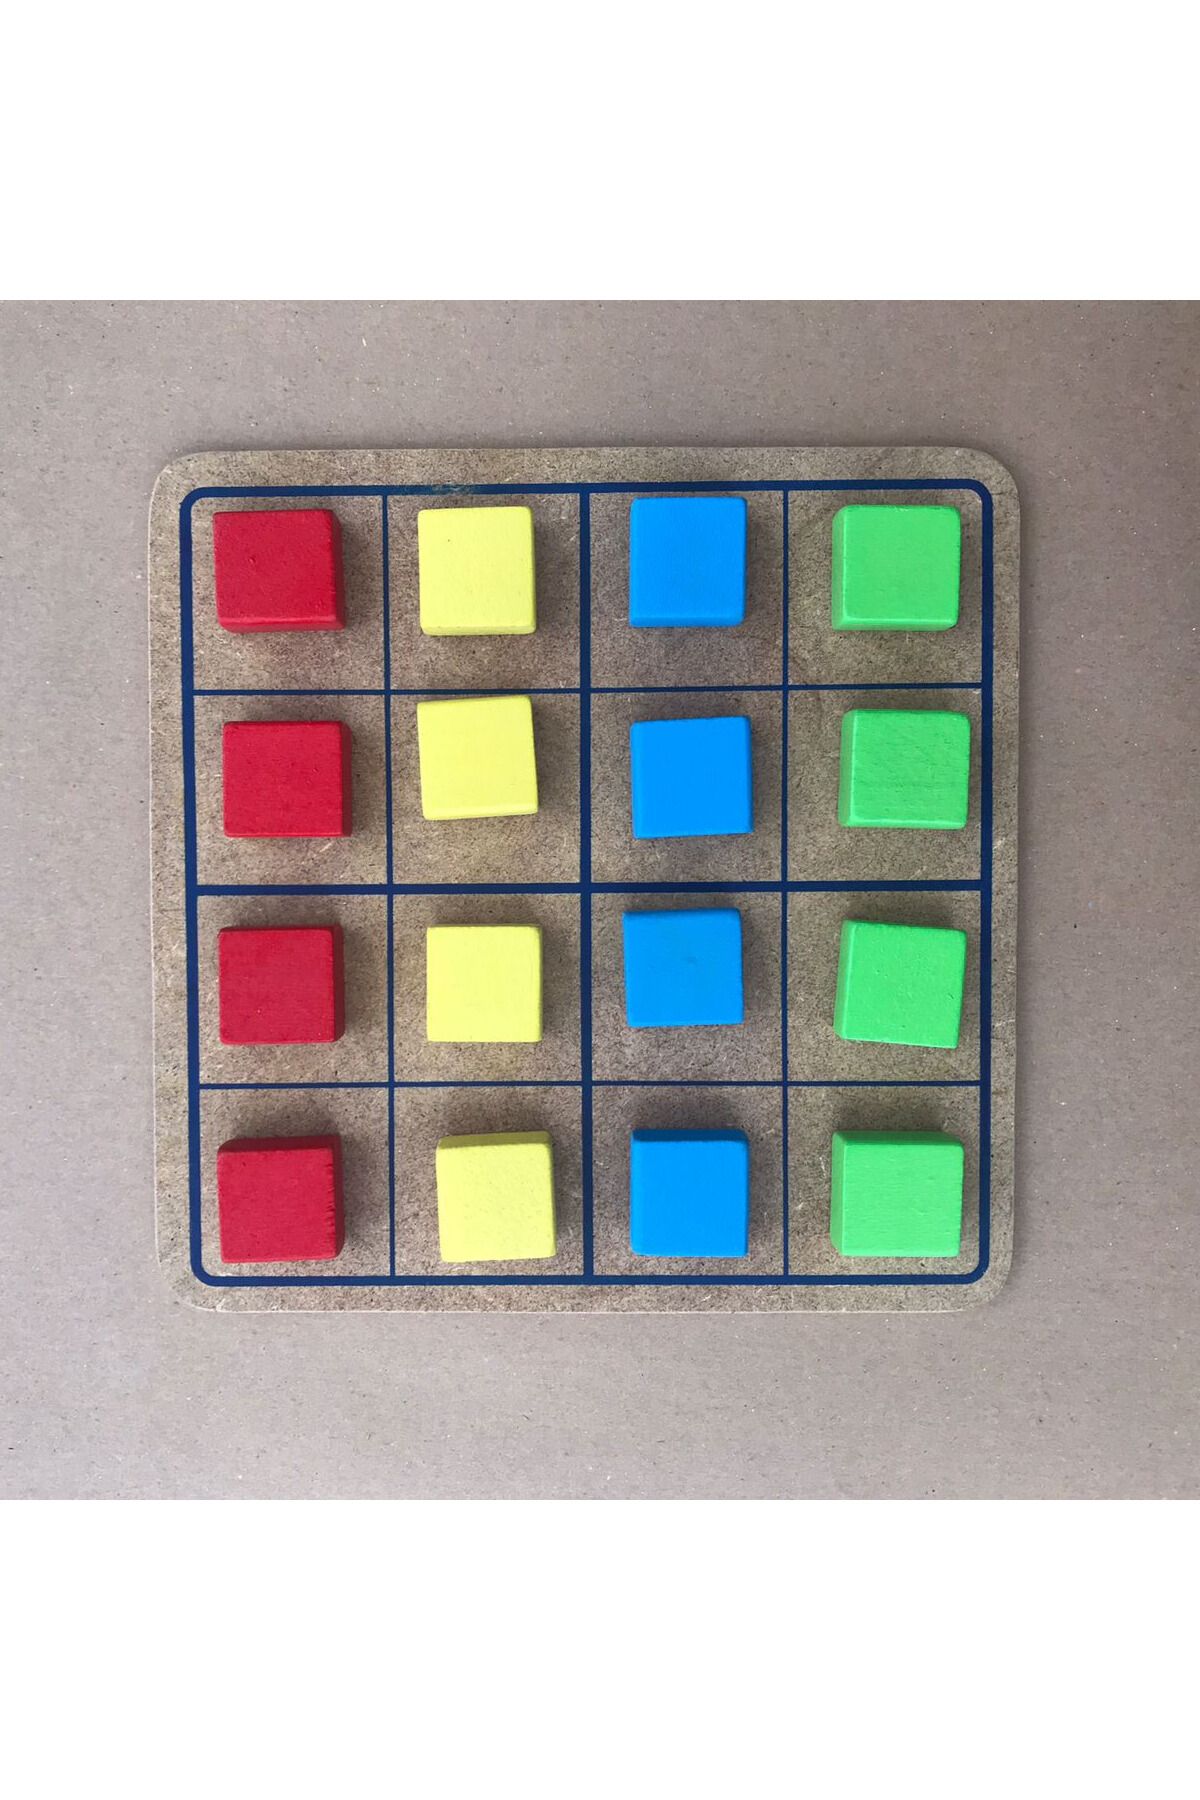 SoyluAhşap Ahşap Oyuncak - Renklerle Sudoku - Ahşap Sudoku - Eğitici Oyuncak - Zeka Oyunları